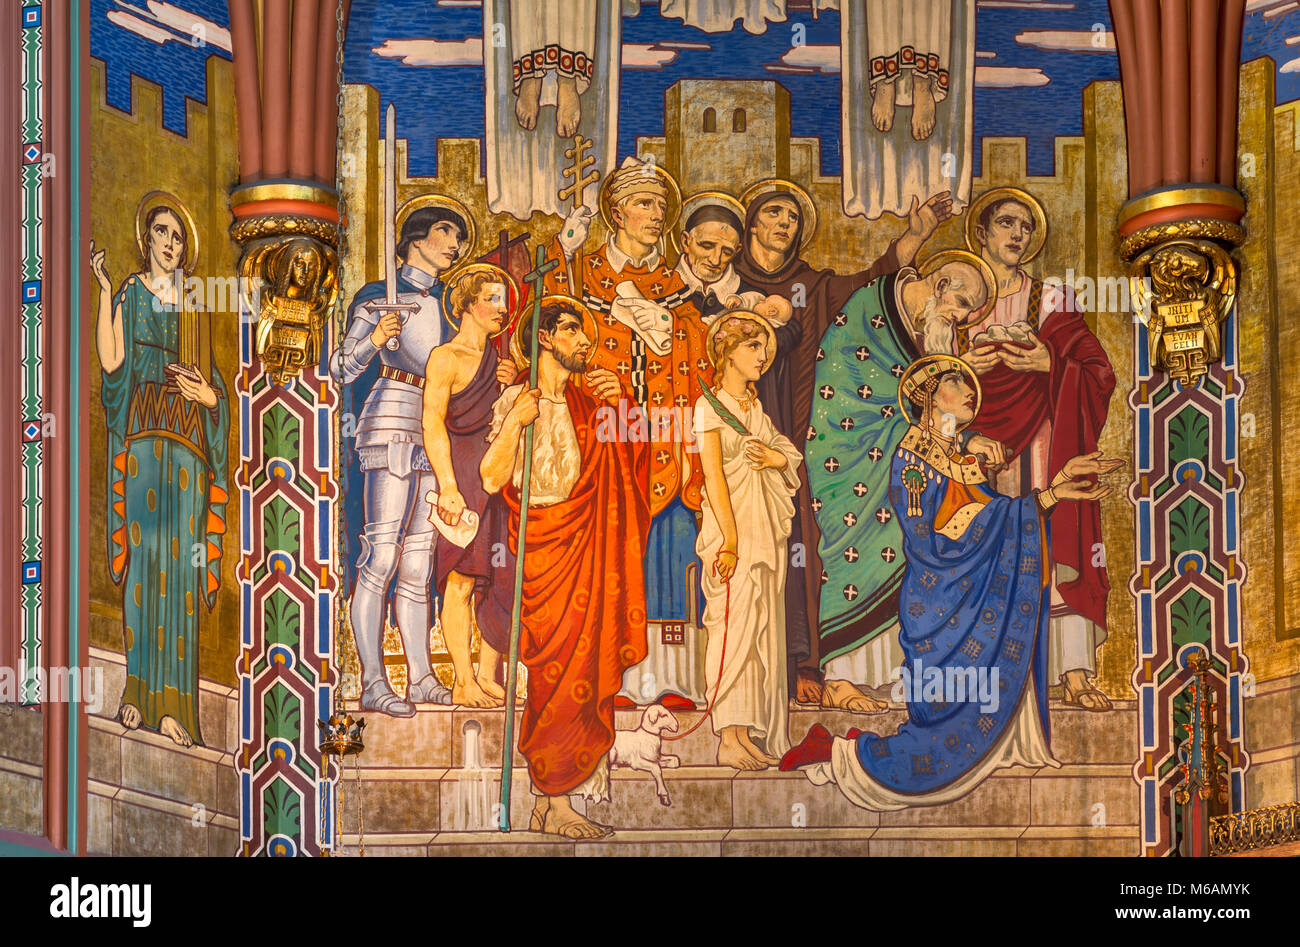 Prominente christliche Figuren an Wandmalereien in der Kathedrale von Madeleine, Salt Lake City, Utah, USA Stockfoto